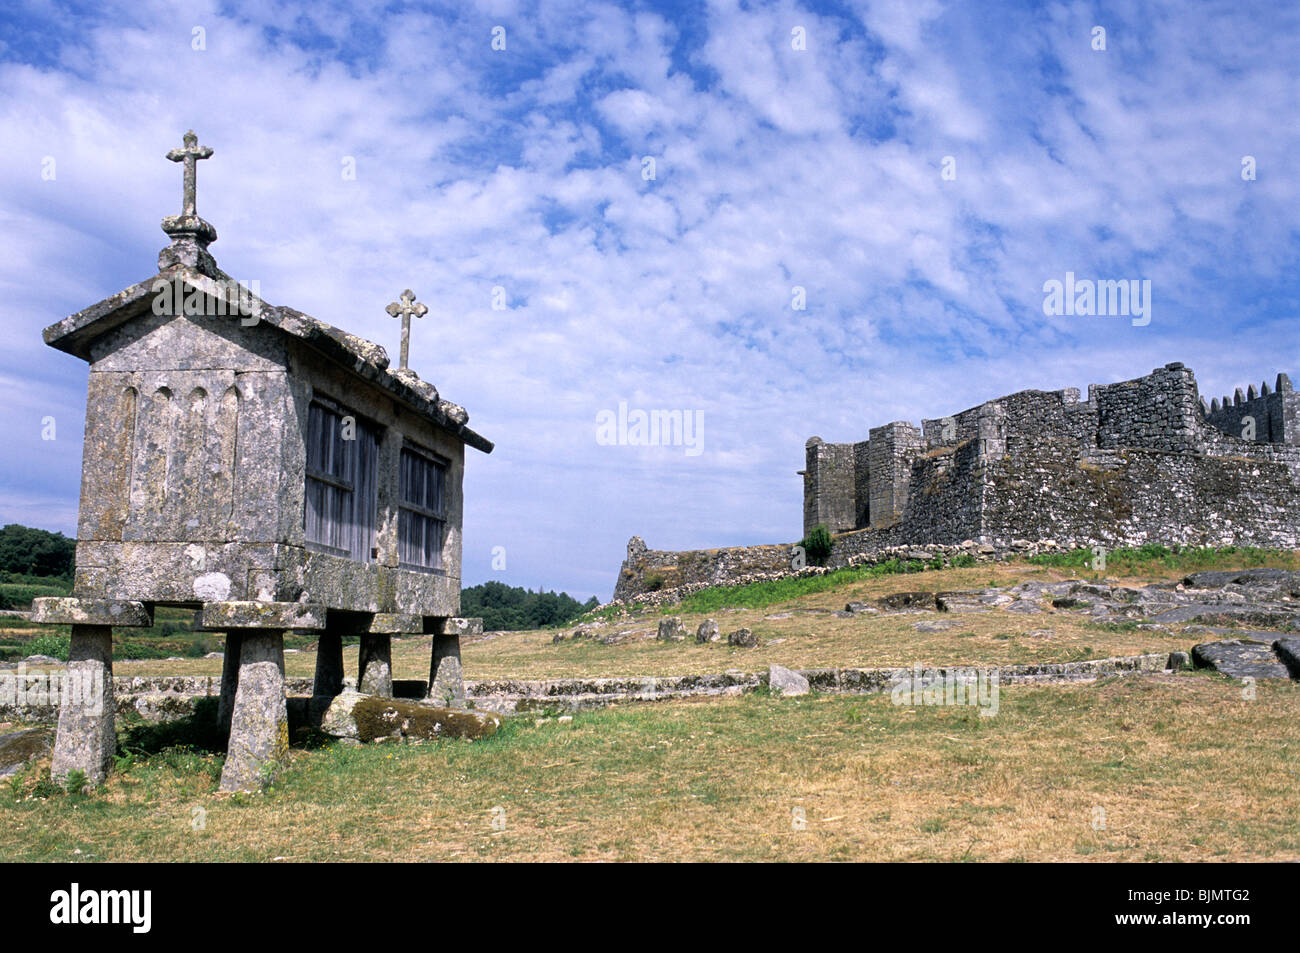 Espigueiros traditionnelles, ou les greniers, de Lindoso, nord du Portugal. La ville, château du xiiie siècle est à l'arrière-plan. Banque D'Images